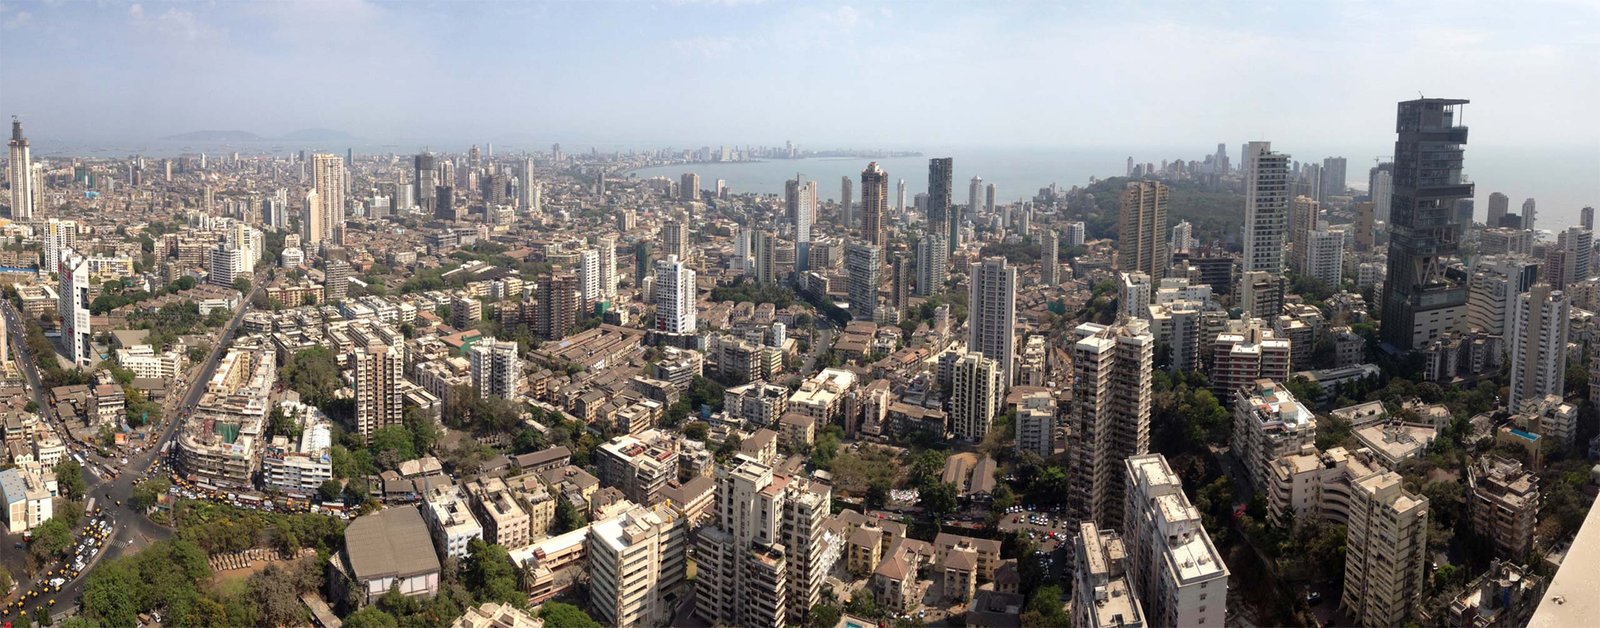 South Mumbai skyline